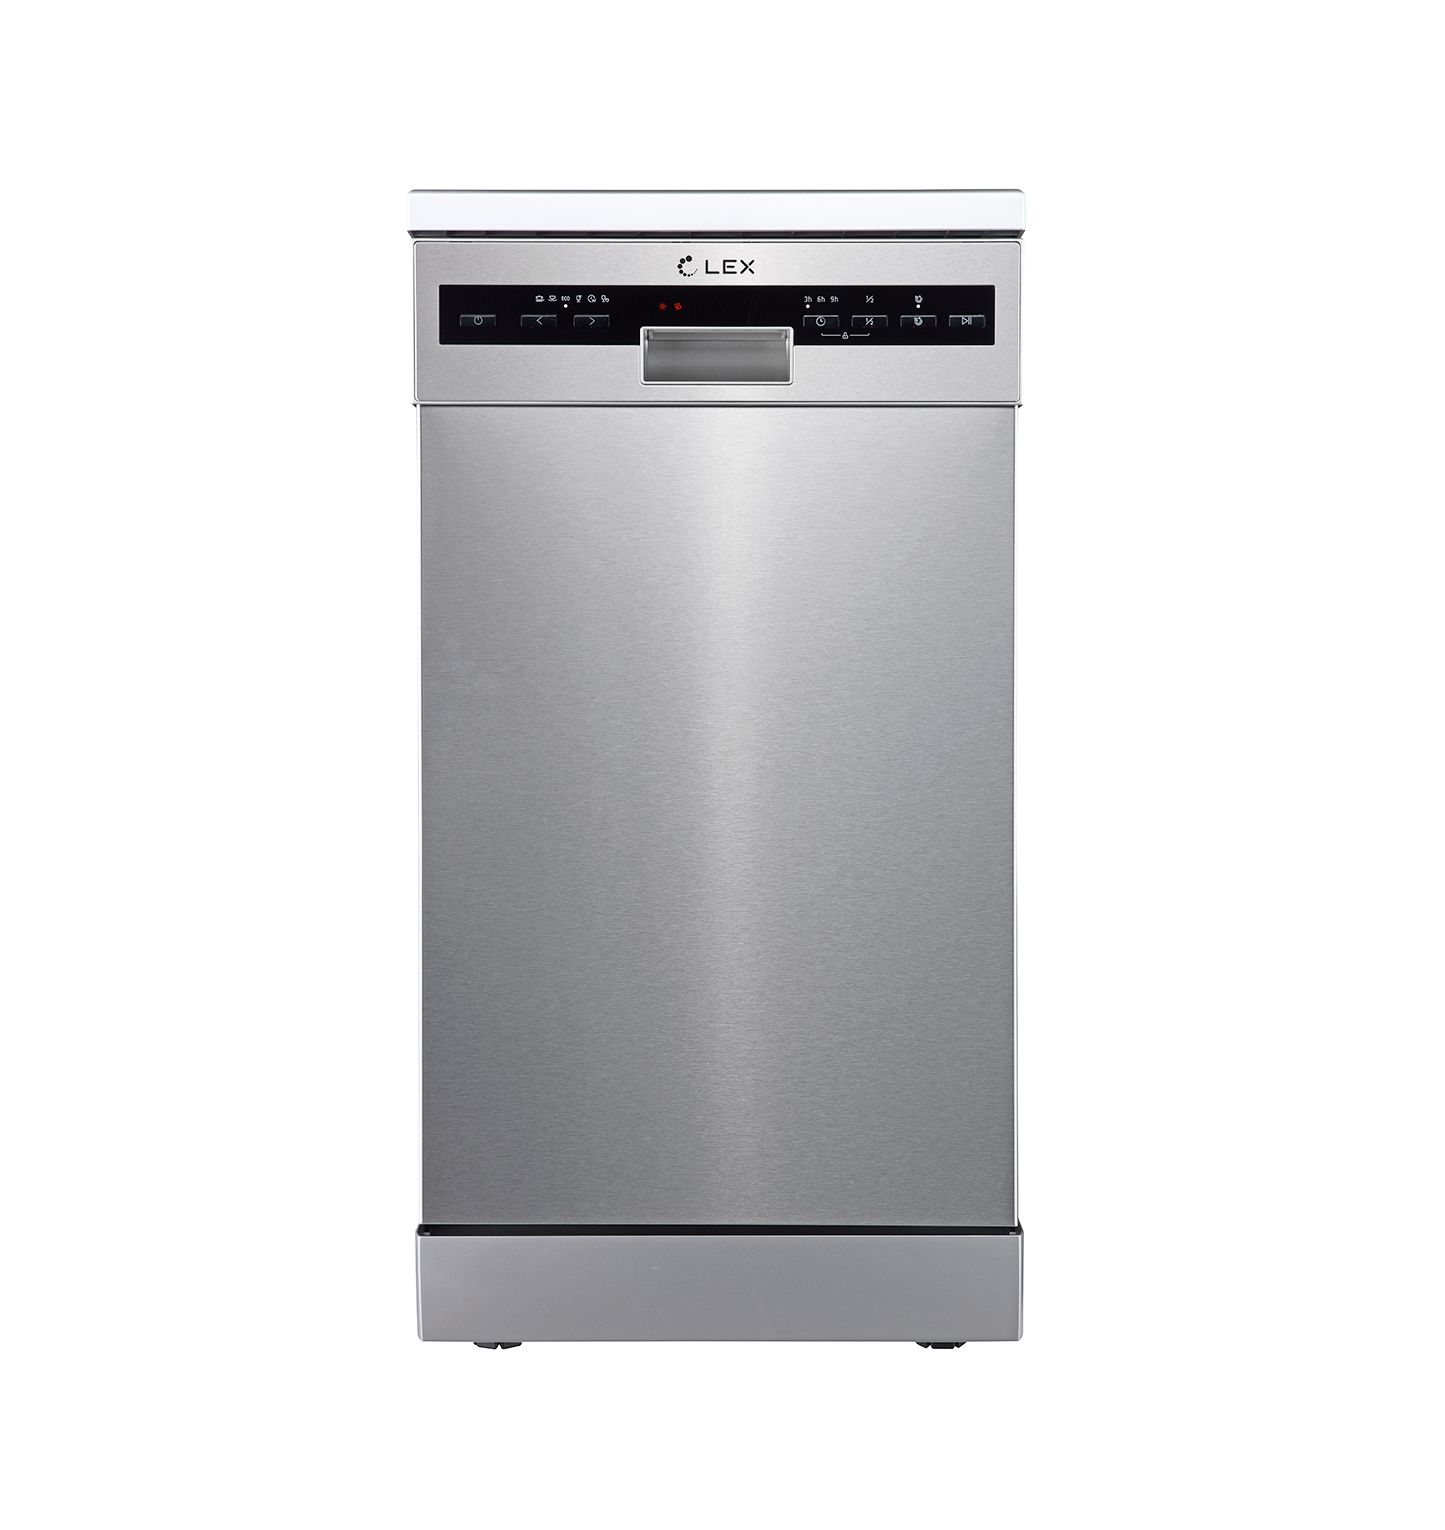 Посудомоечная машина LEX DW 4562 серебристый посудомоечная машина simfer dwp6701 белая